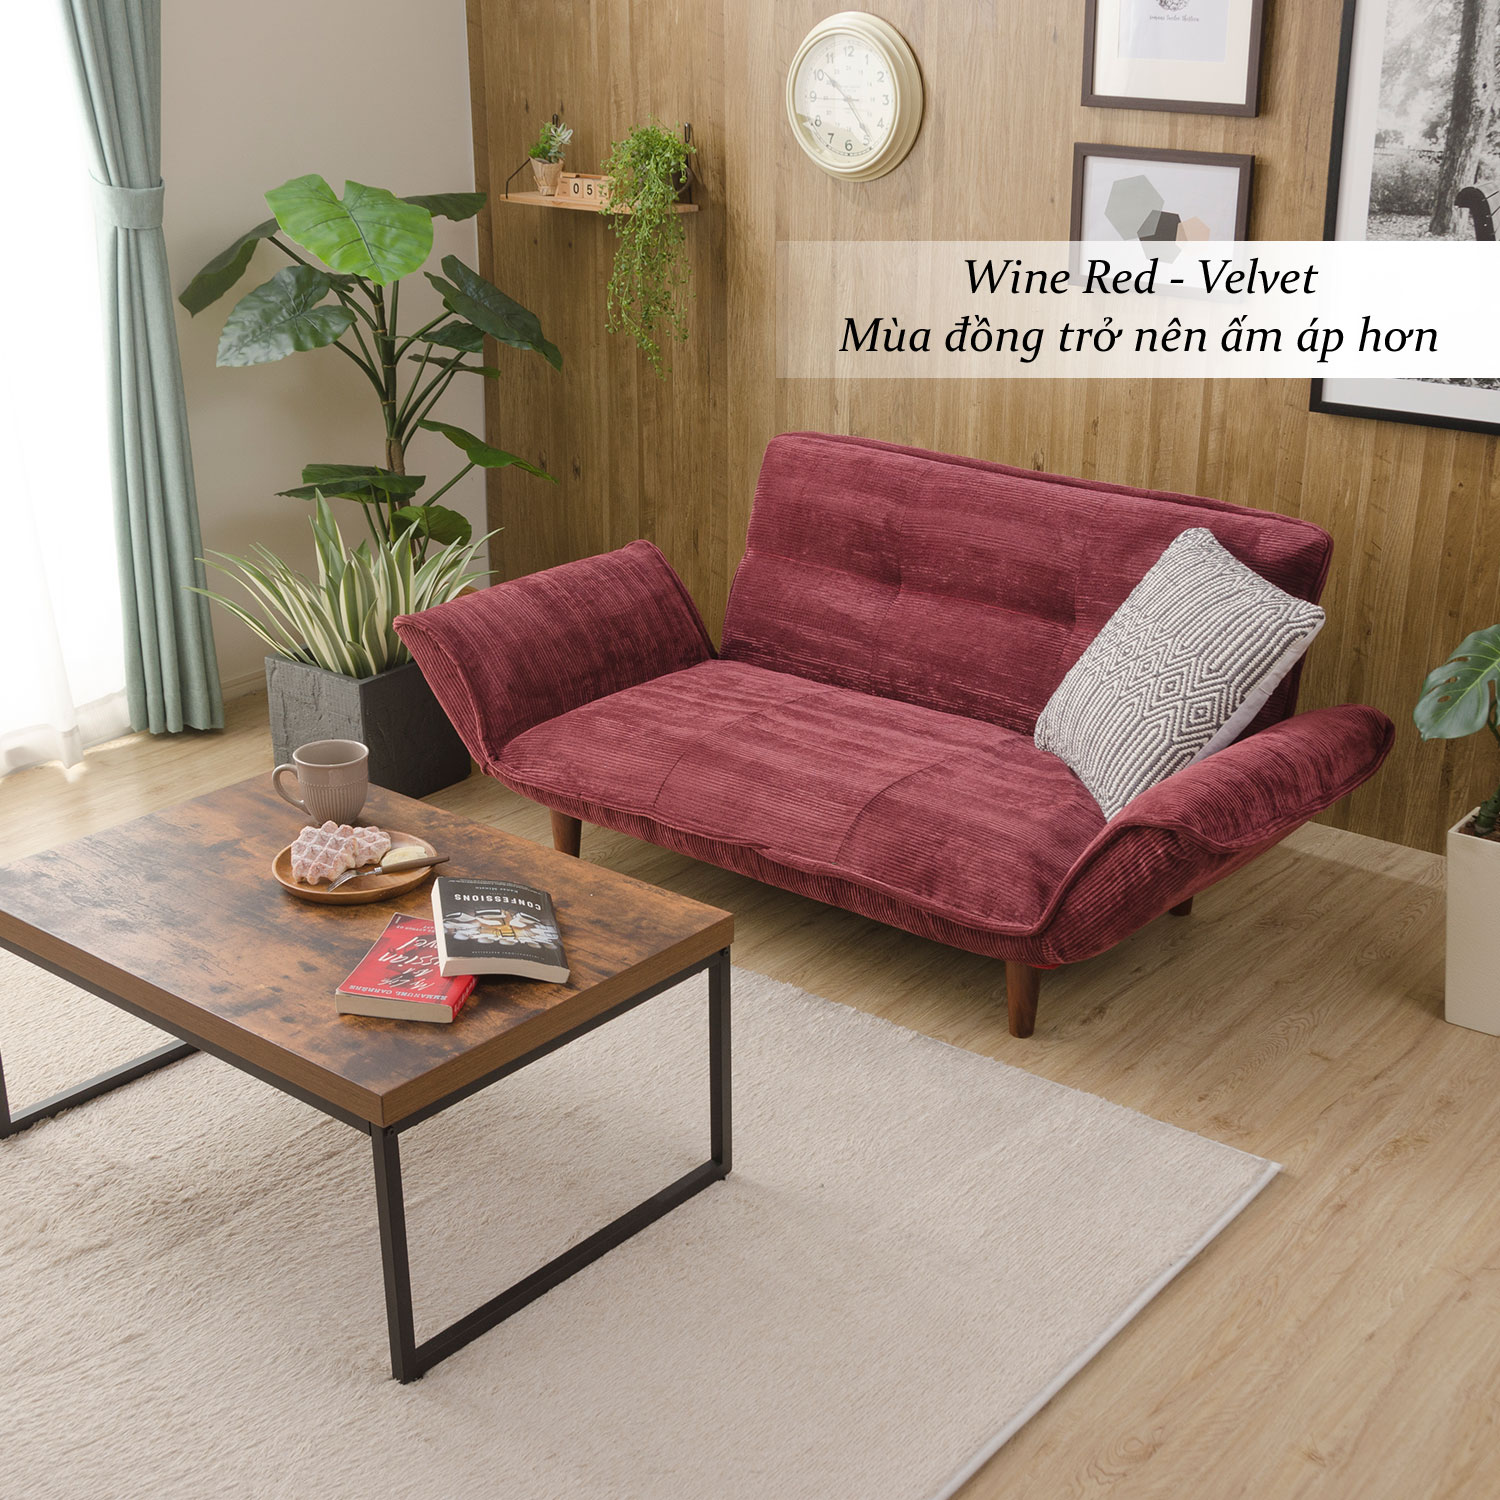 trang trí nội thất mùa đông, trang trí phòng khách mùa đông, sofa thông minh màu đỏ cổ điển, Cellutane Việt Nam, Nội thất nhật bản